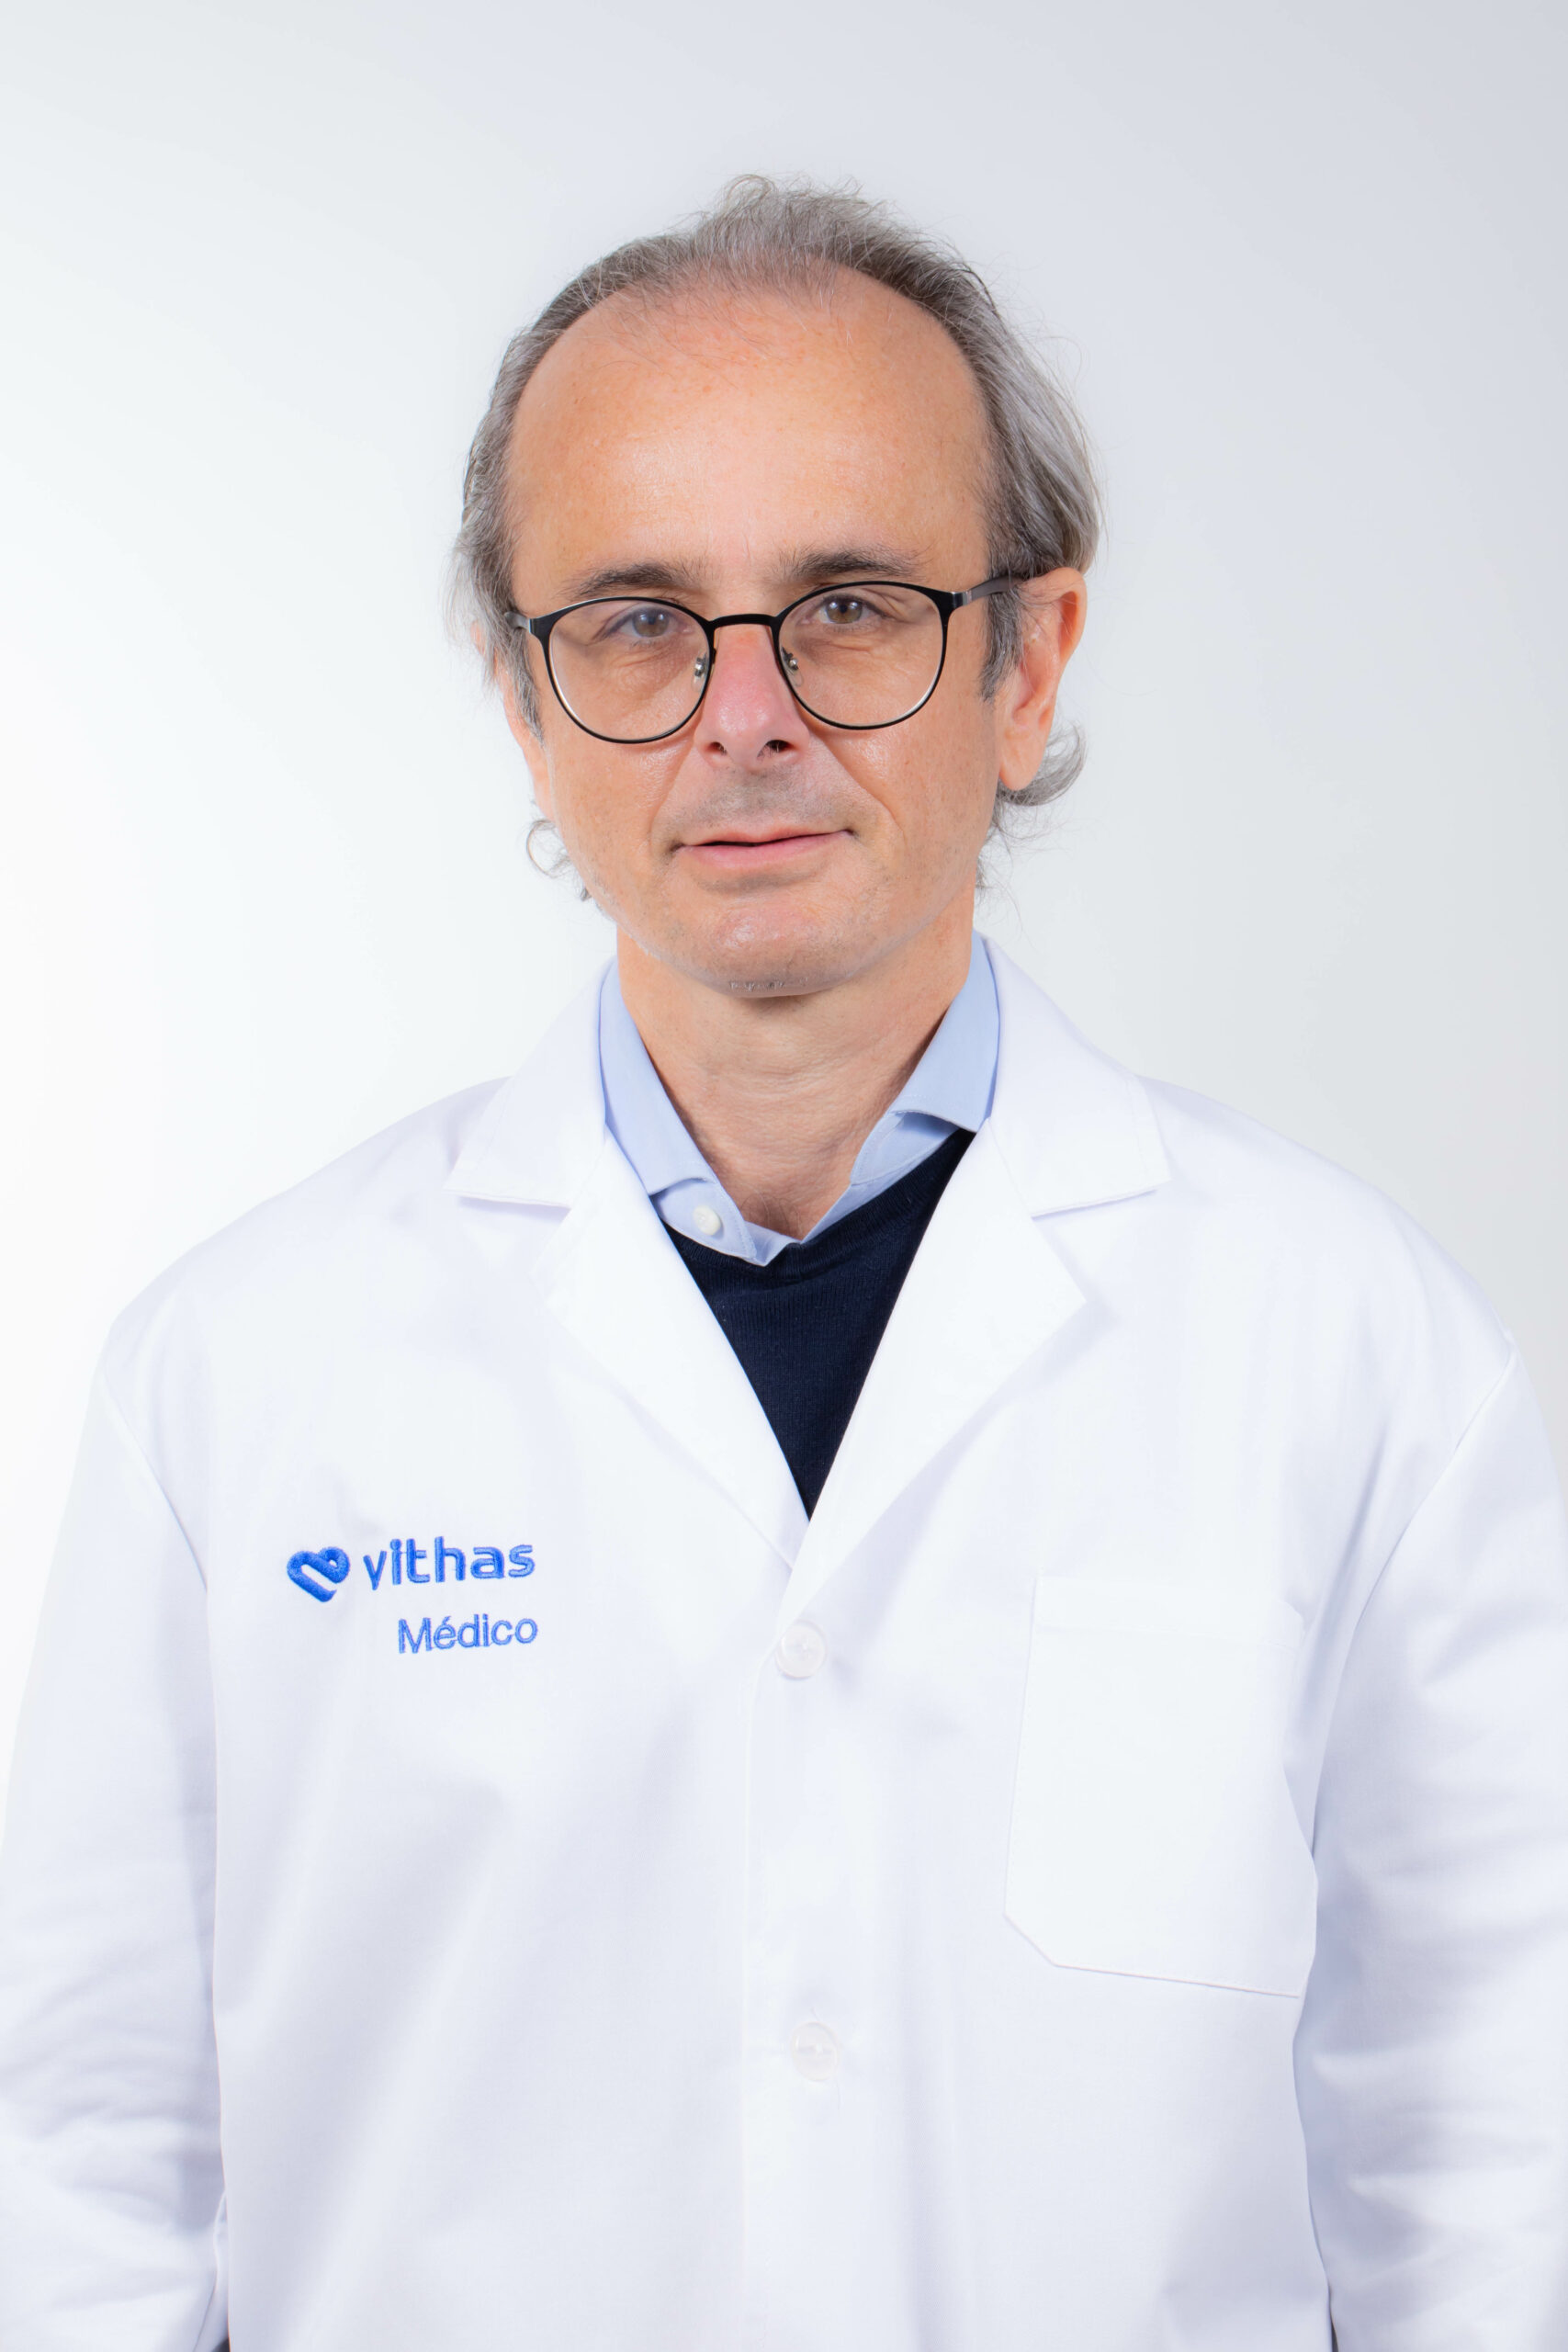 Dr. Andrés Javier Tomás Gómez